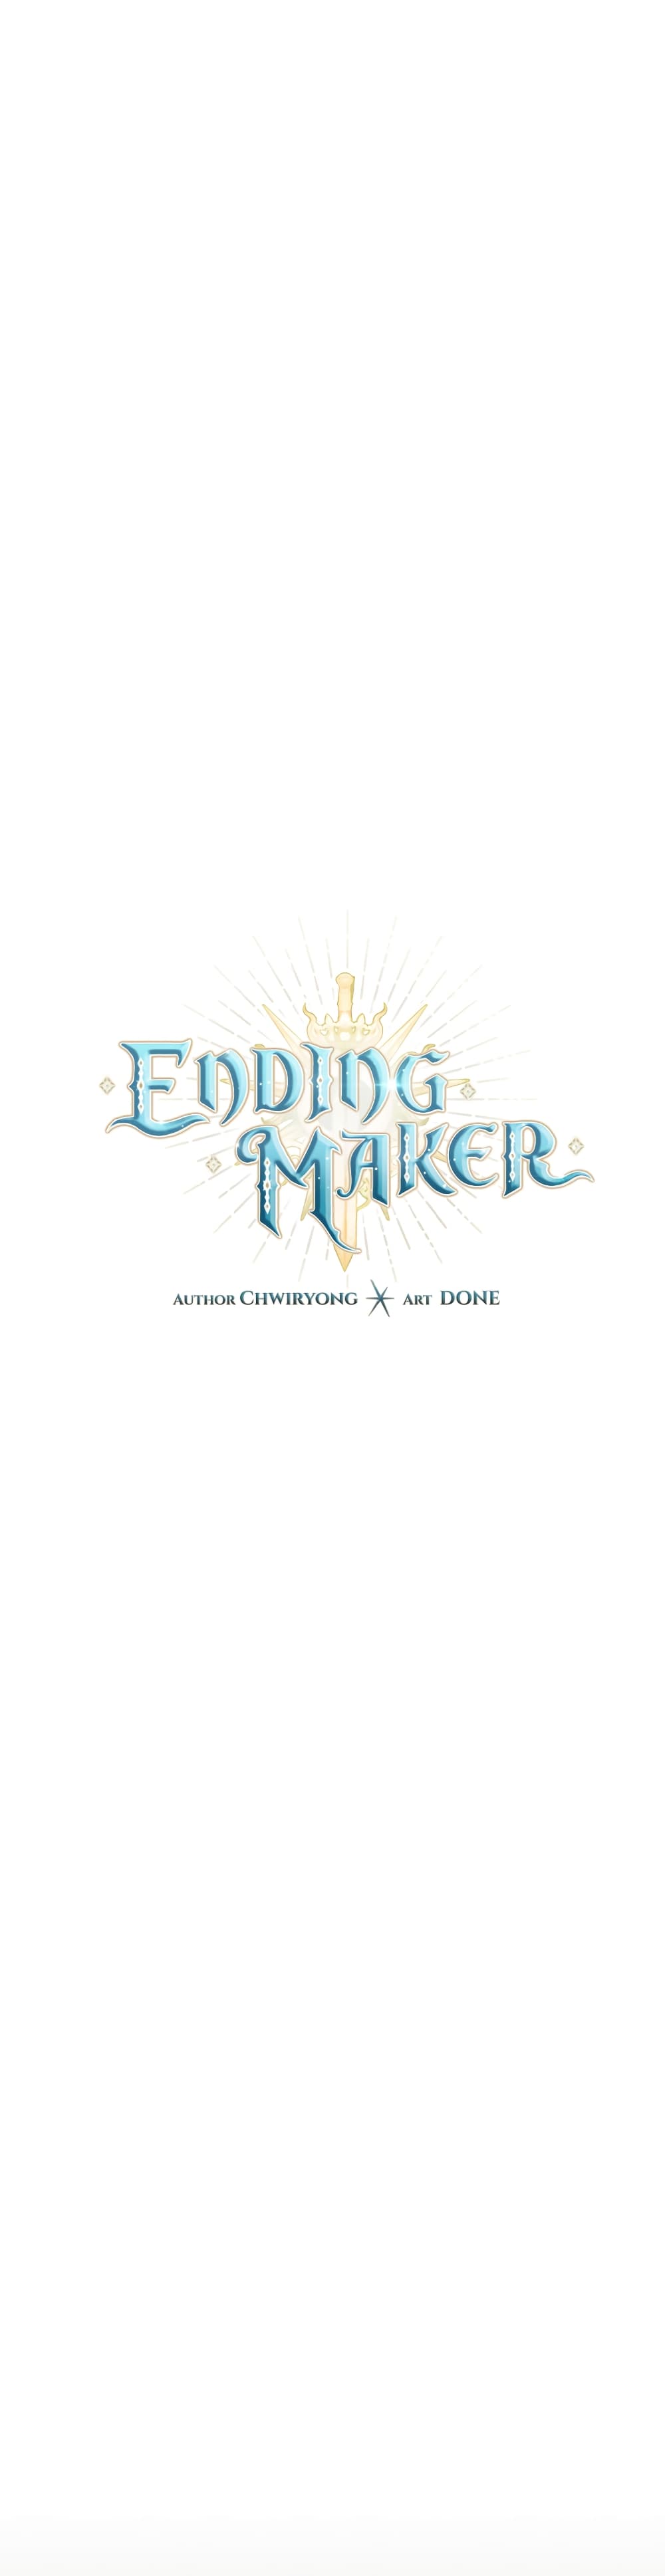 Ending Maker 23 13